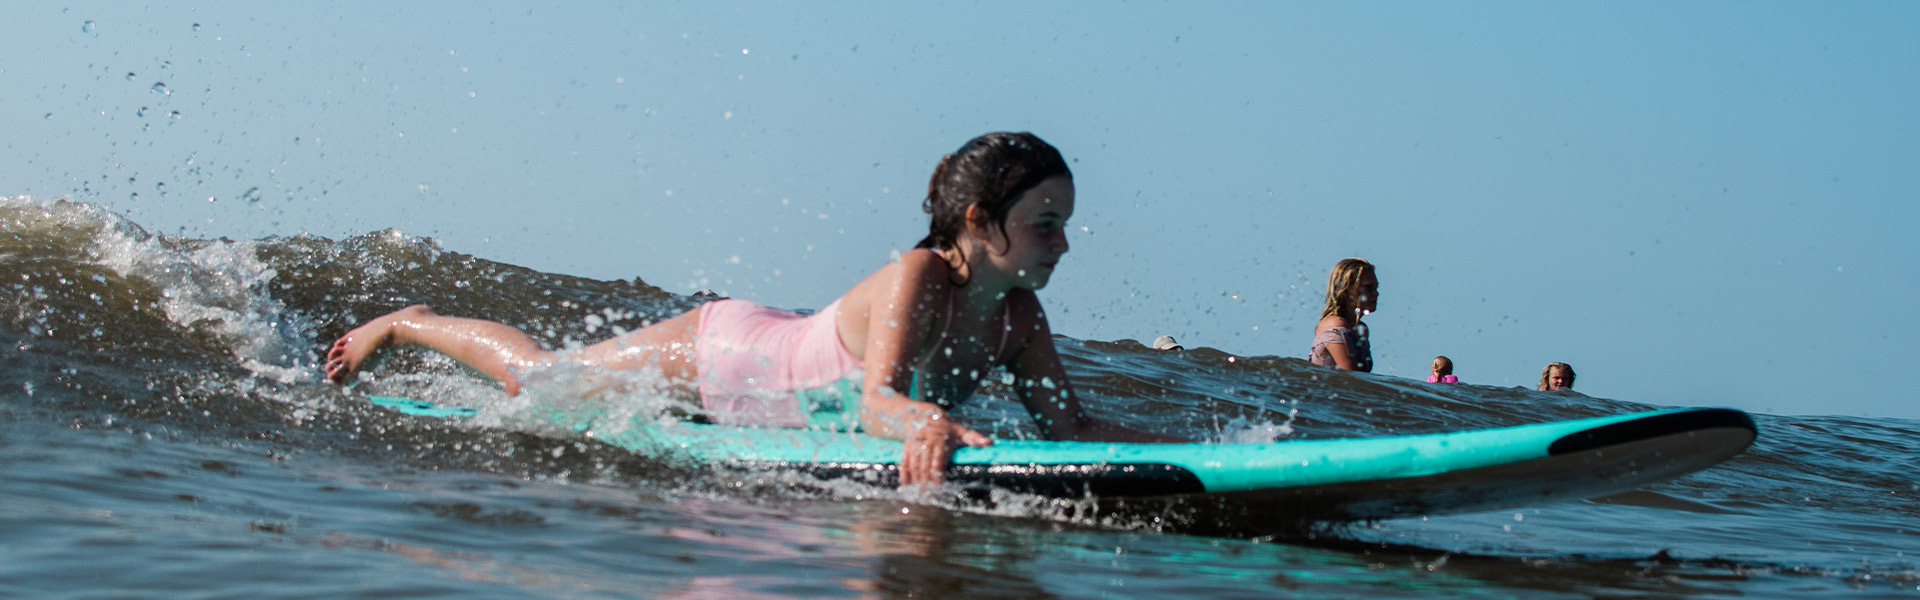 Myrtle Beach Surfing Events